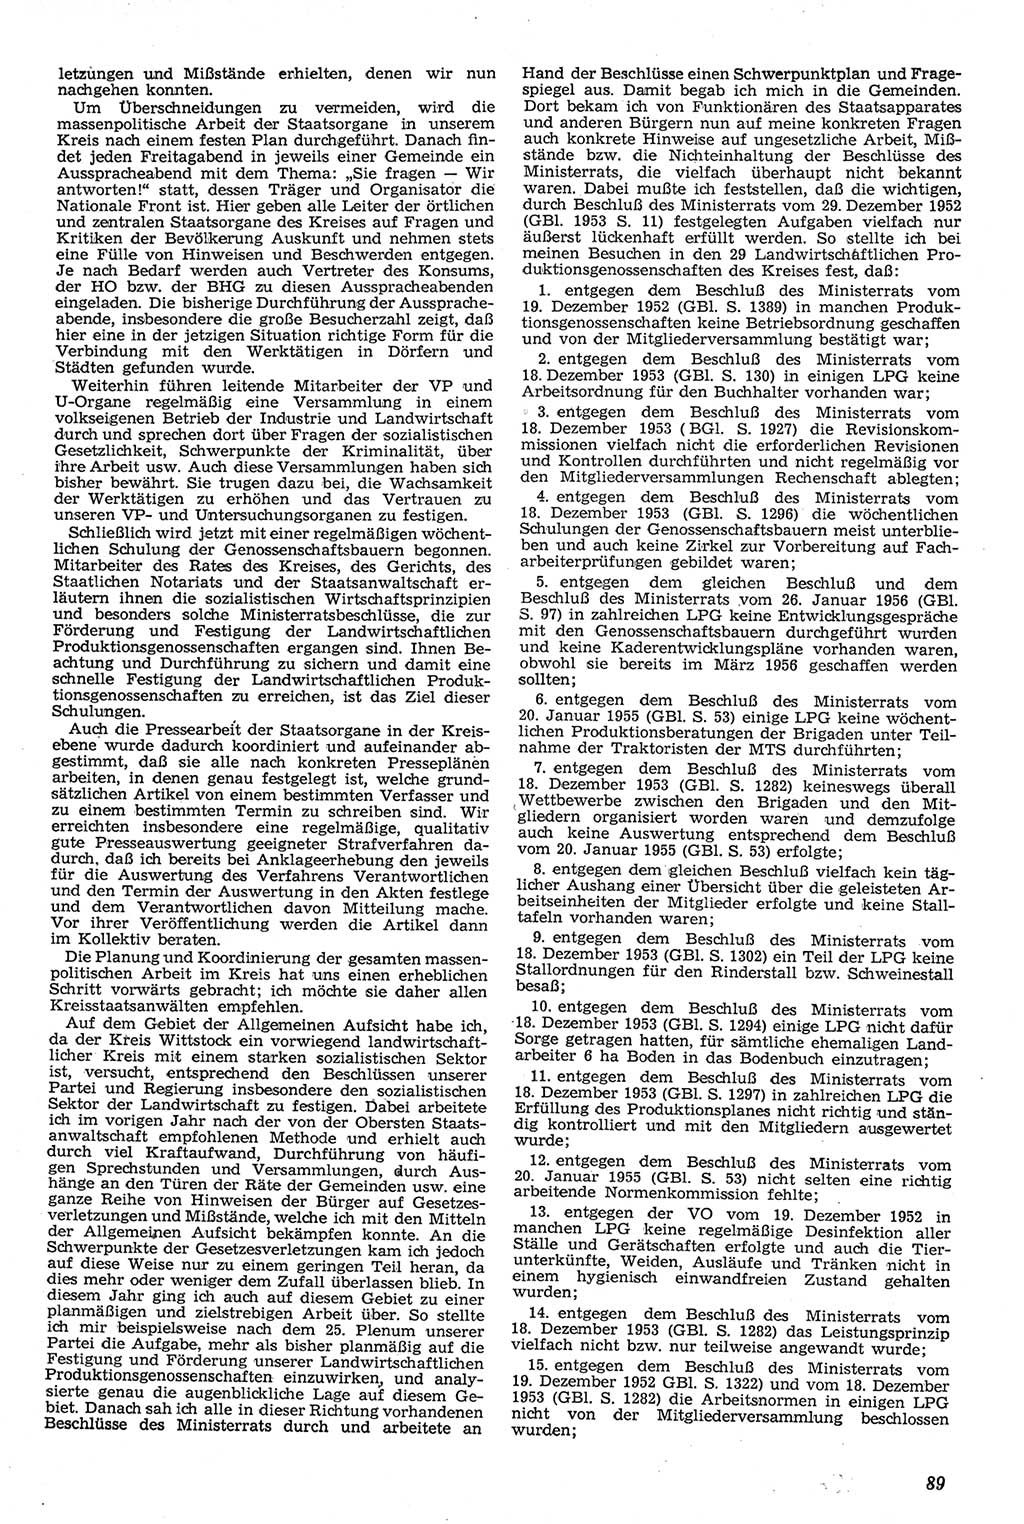 Neue Justiz (NJ), Zeitschrift für Recht und Rechtswissenschaft [Deutsche Demokratische Republik (DDR)], 11. Jahrgang 1957, Seite 89 (NJ DDR 1957, S. 89)